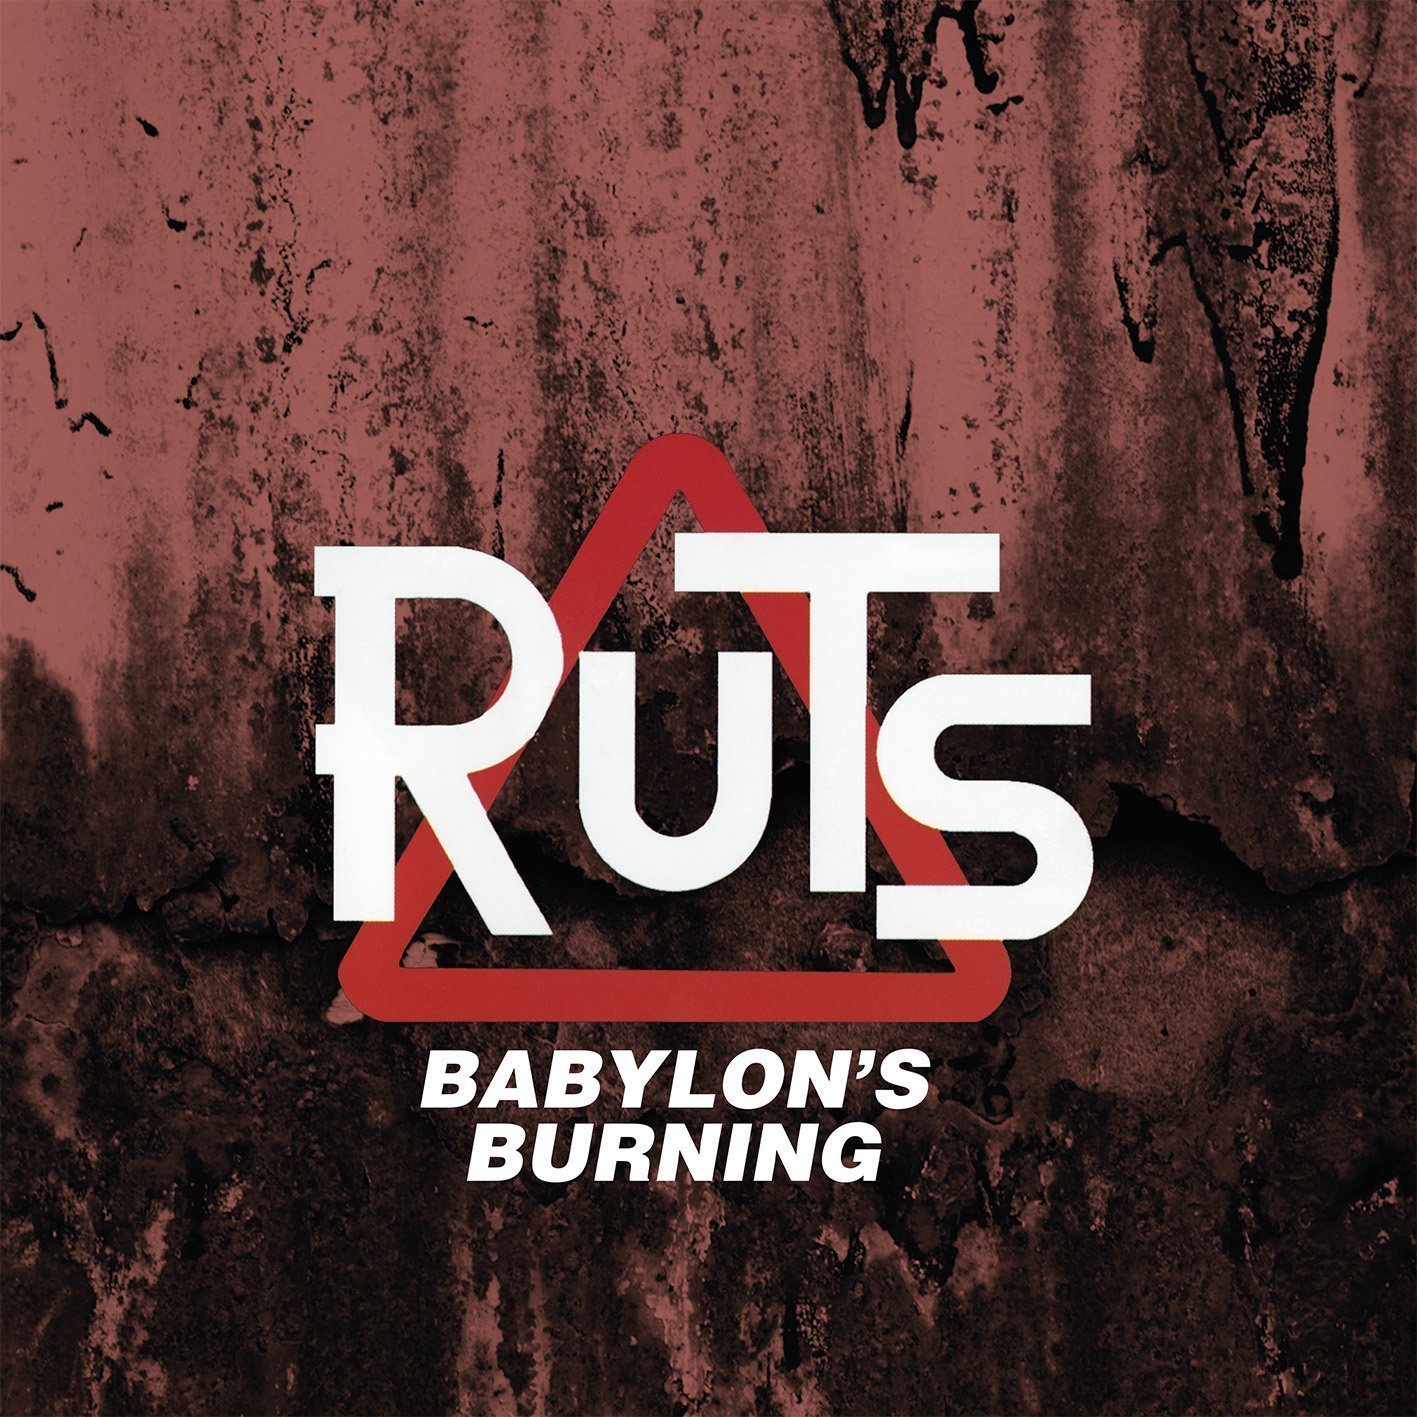 Vinyl Record The Ruts - Babylon's Burning (2 LP)